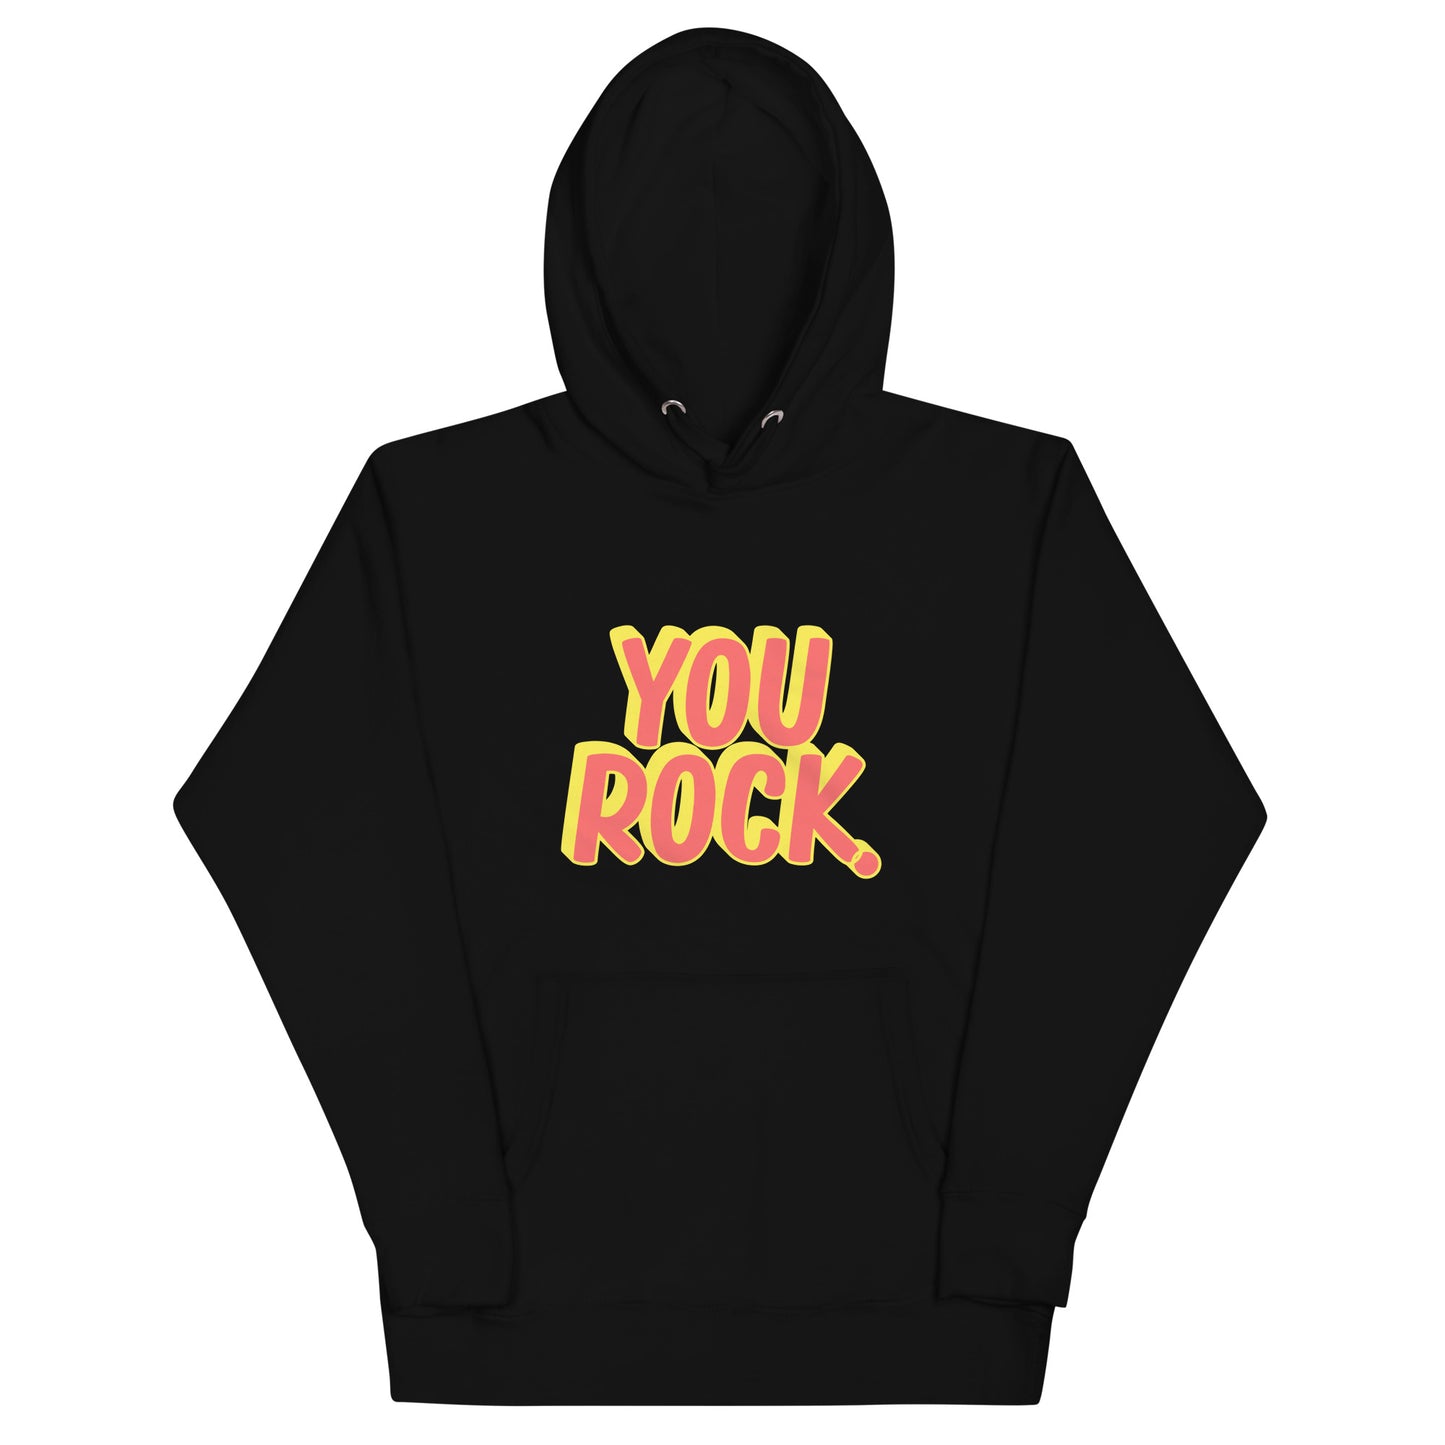 You Rock unisex hoodie